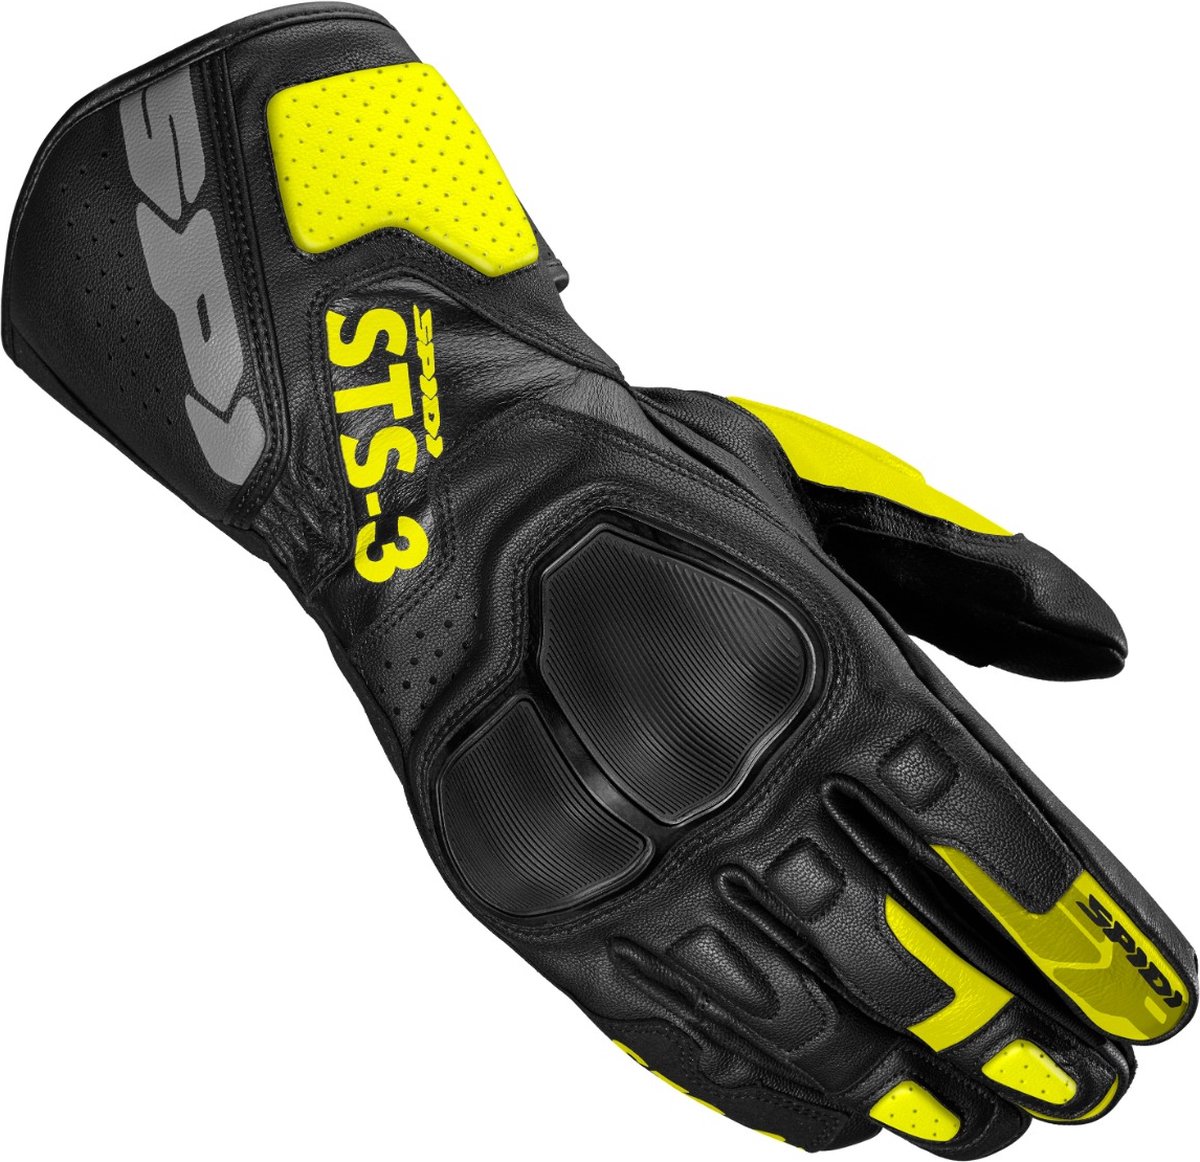 Spidi Sts-3 Black Fluo Yellow Motorcycle Gloves S - Maat S - Handschoen